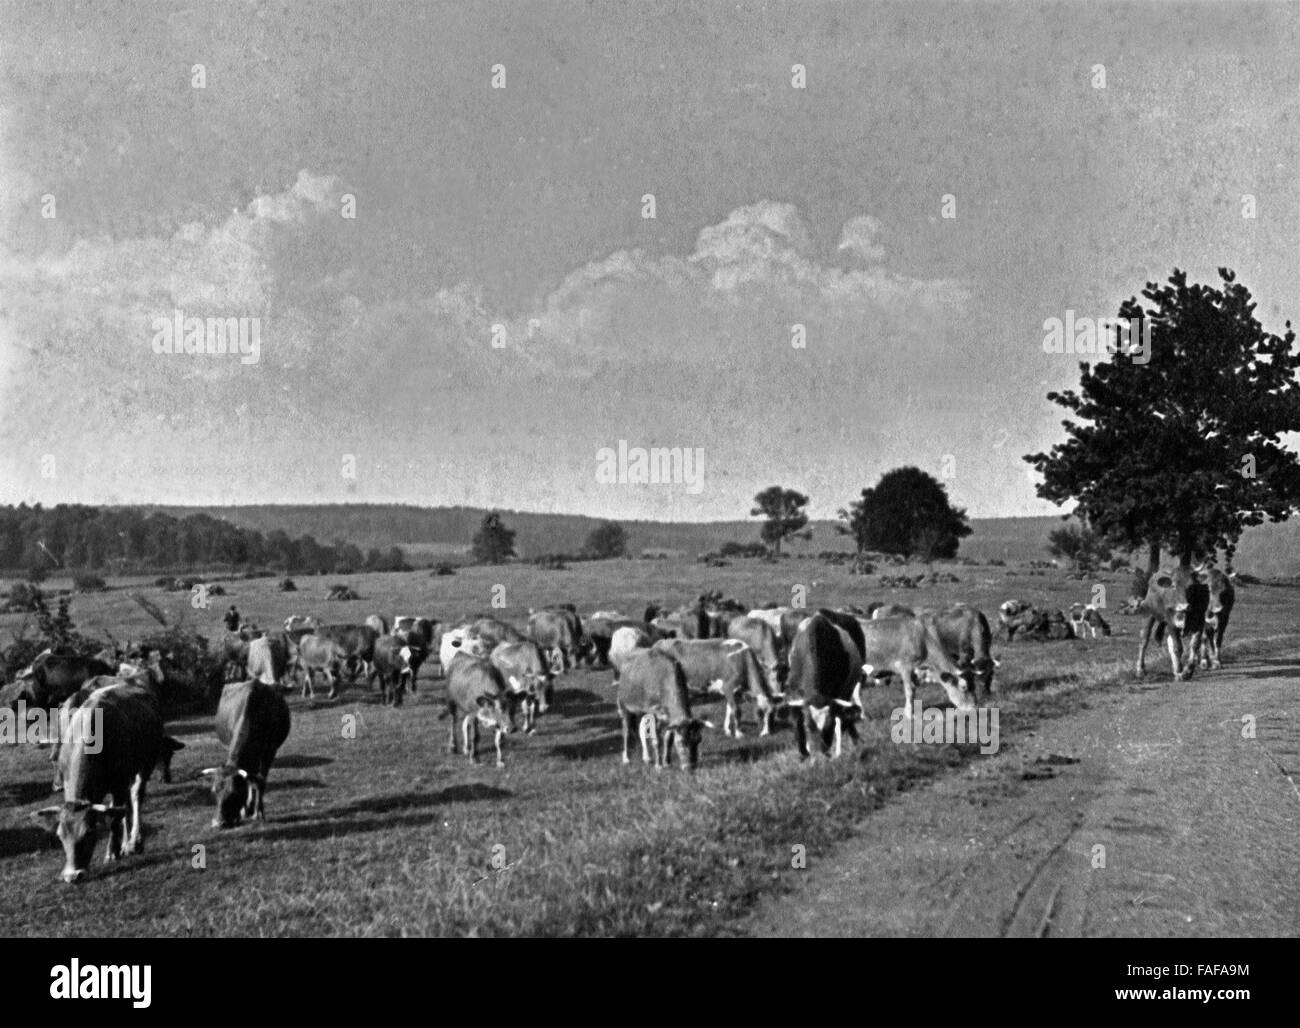 Kuhherde auf dem Weg in die Schweiz im Westerwald, Deutschland 1930er Jahre. Cattle on the way to Switzerland at Westerwald area, Germany 1930s. Stock Photo